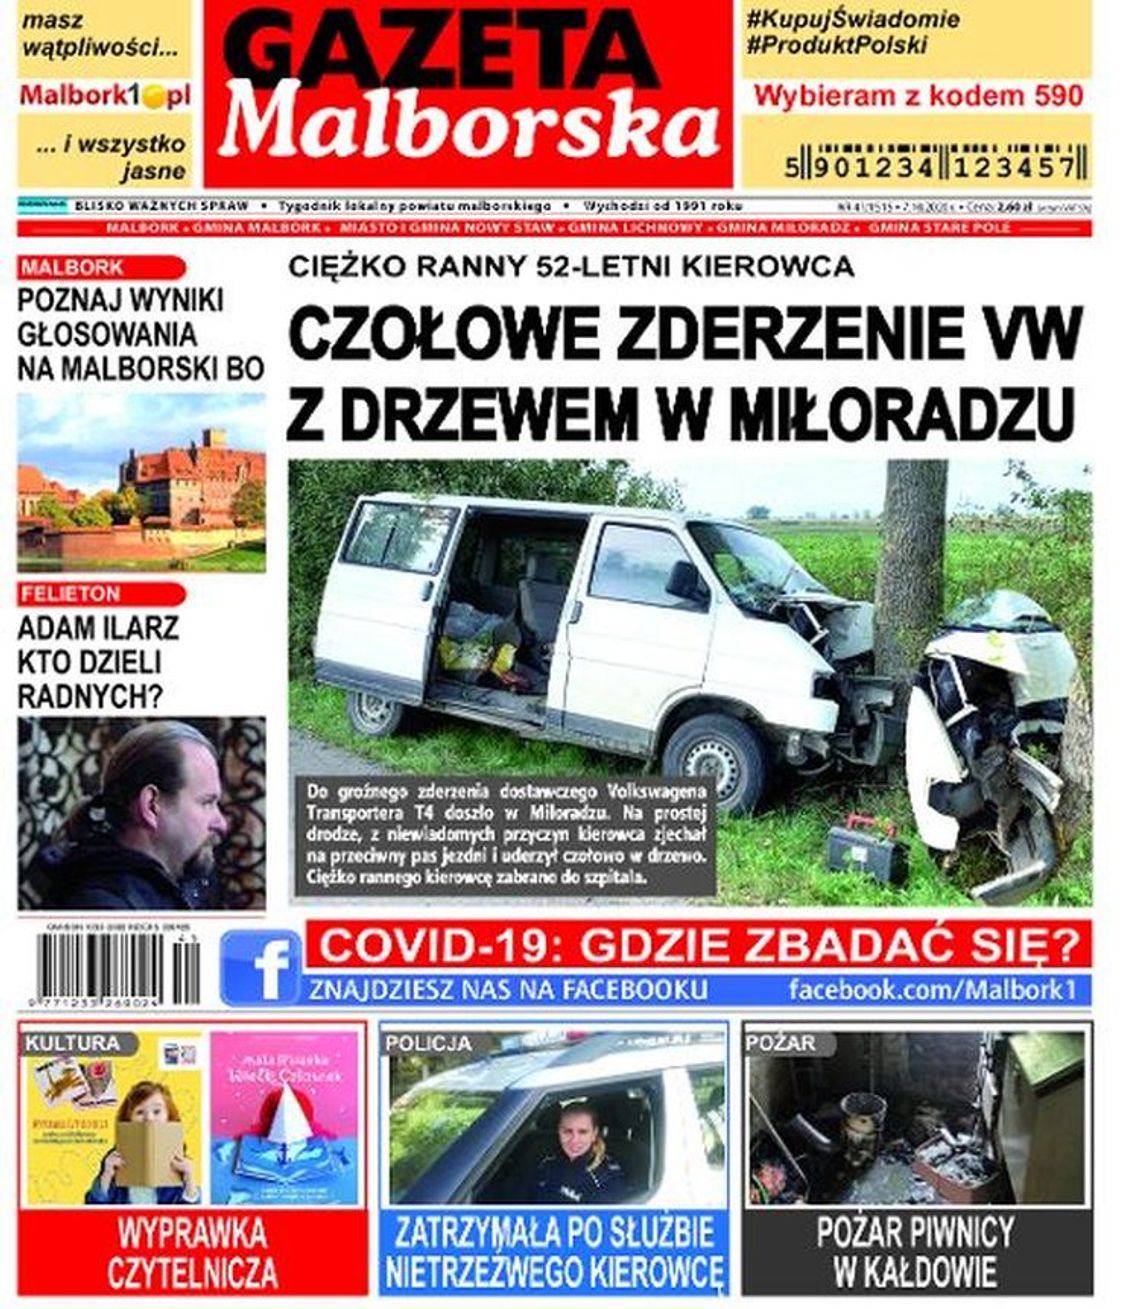 Najświeższe wiadomości z Malborka i okolic naszej gminy. Nowy numer Gazety Malborskiej już w sprzedaży! Co w środku?